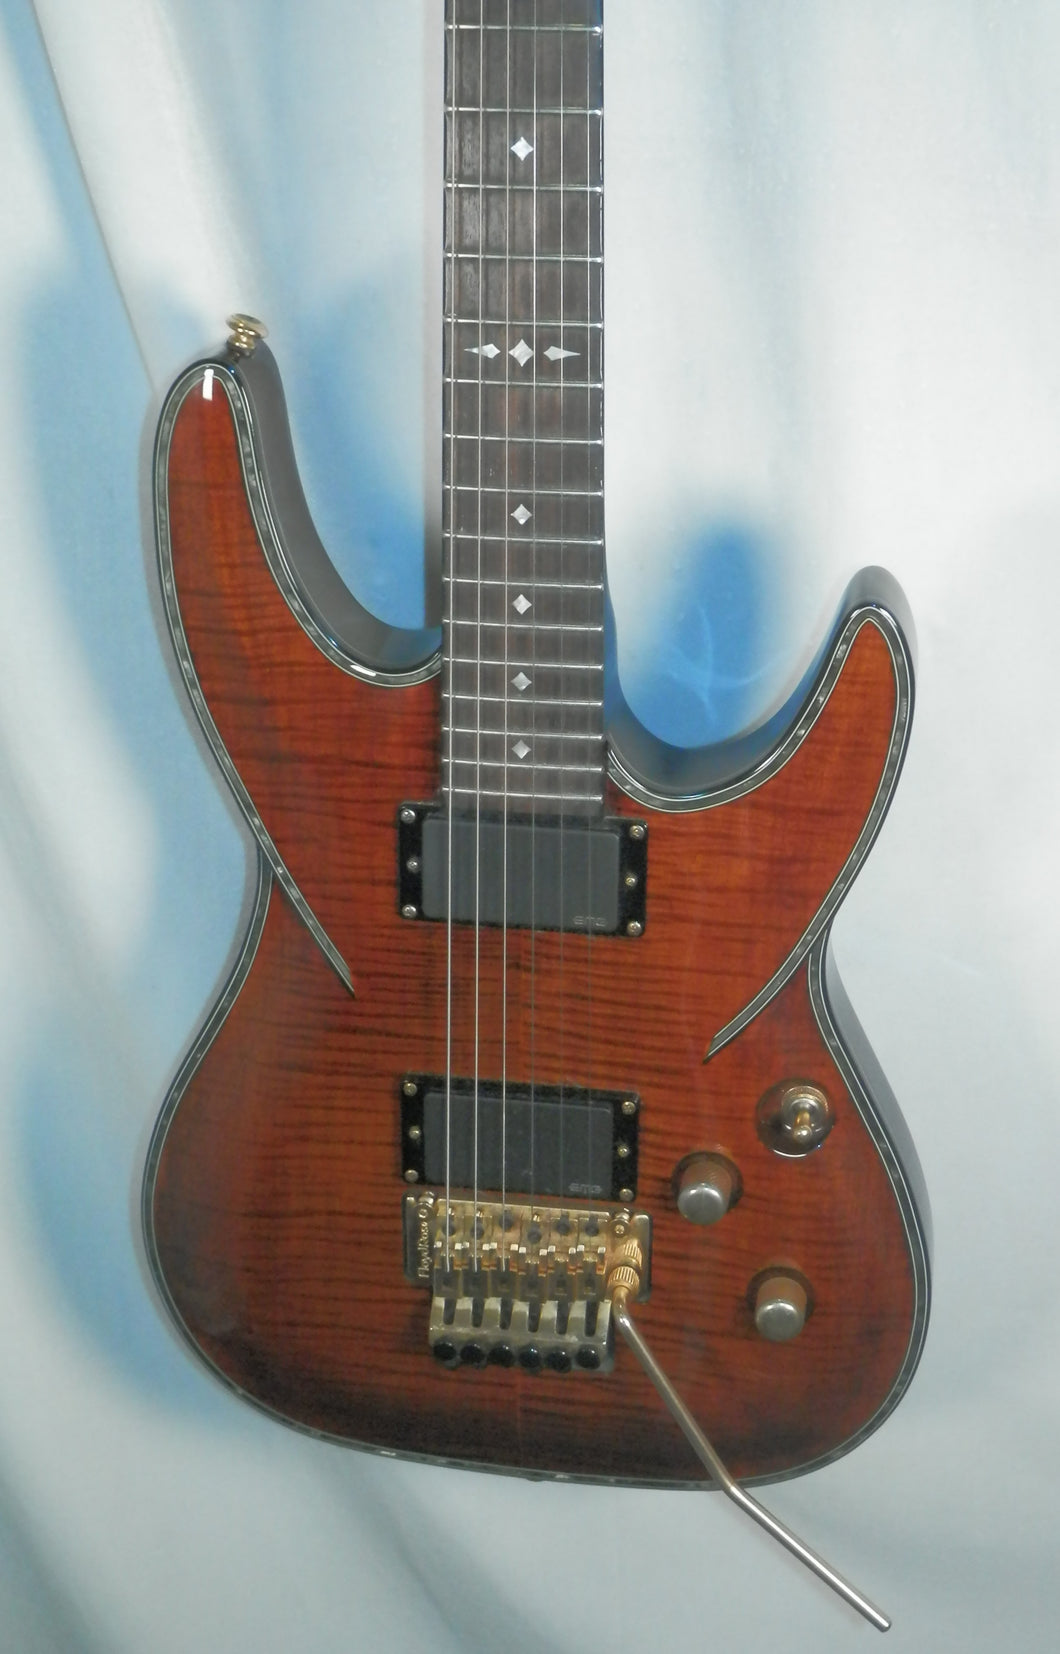 DBZ Barchetta FM Tiger's Eye Floyd Rose 22-fret electric guitar used